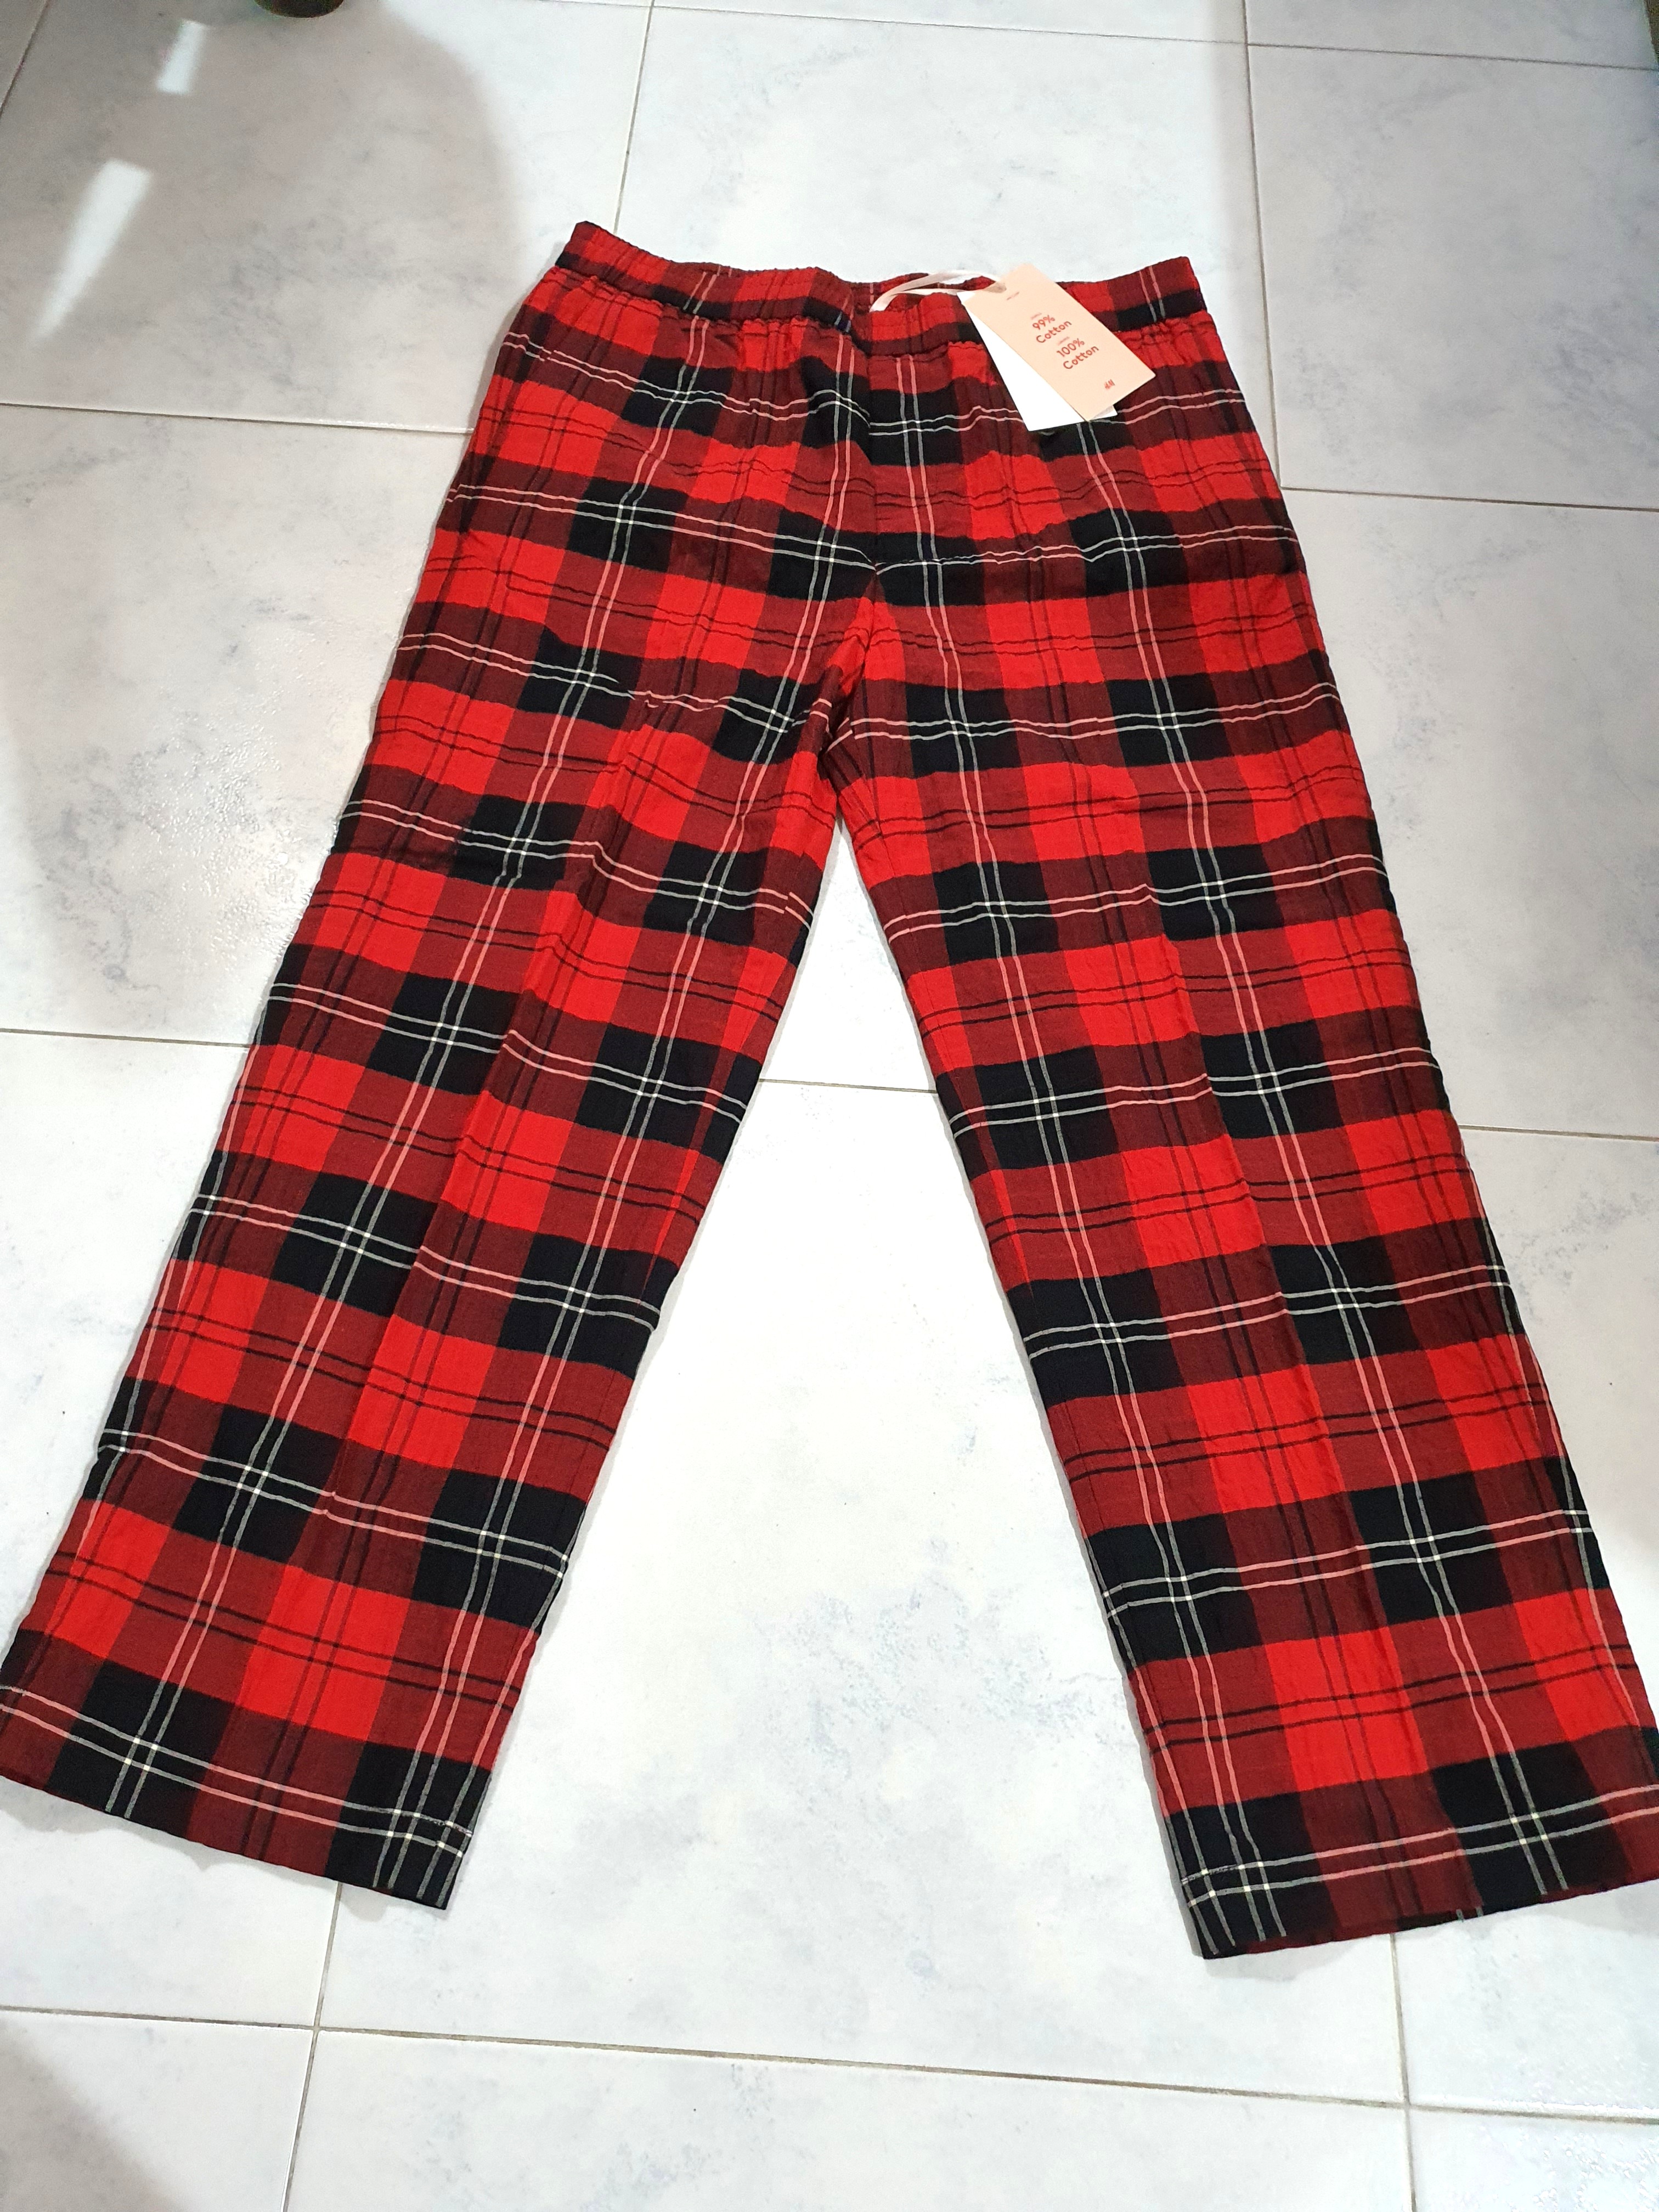 Simone Rocha x H&M - Red Checkered Pants, Men's Fashion, Bottoms 